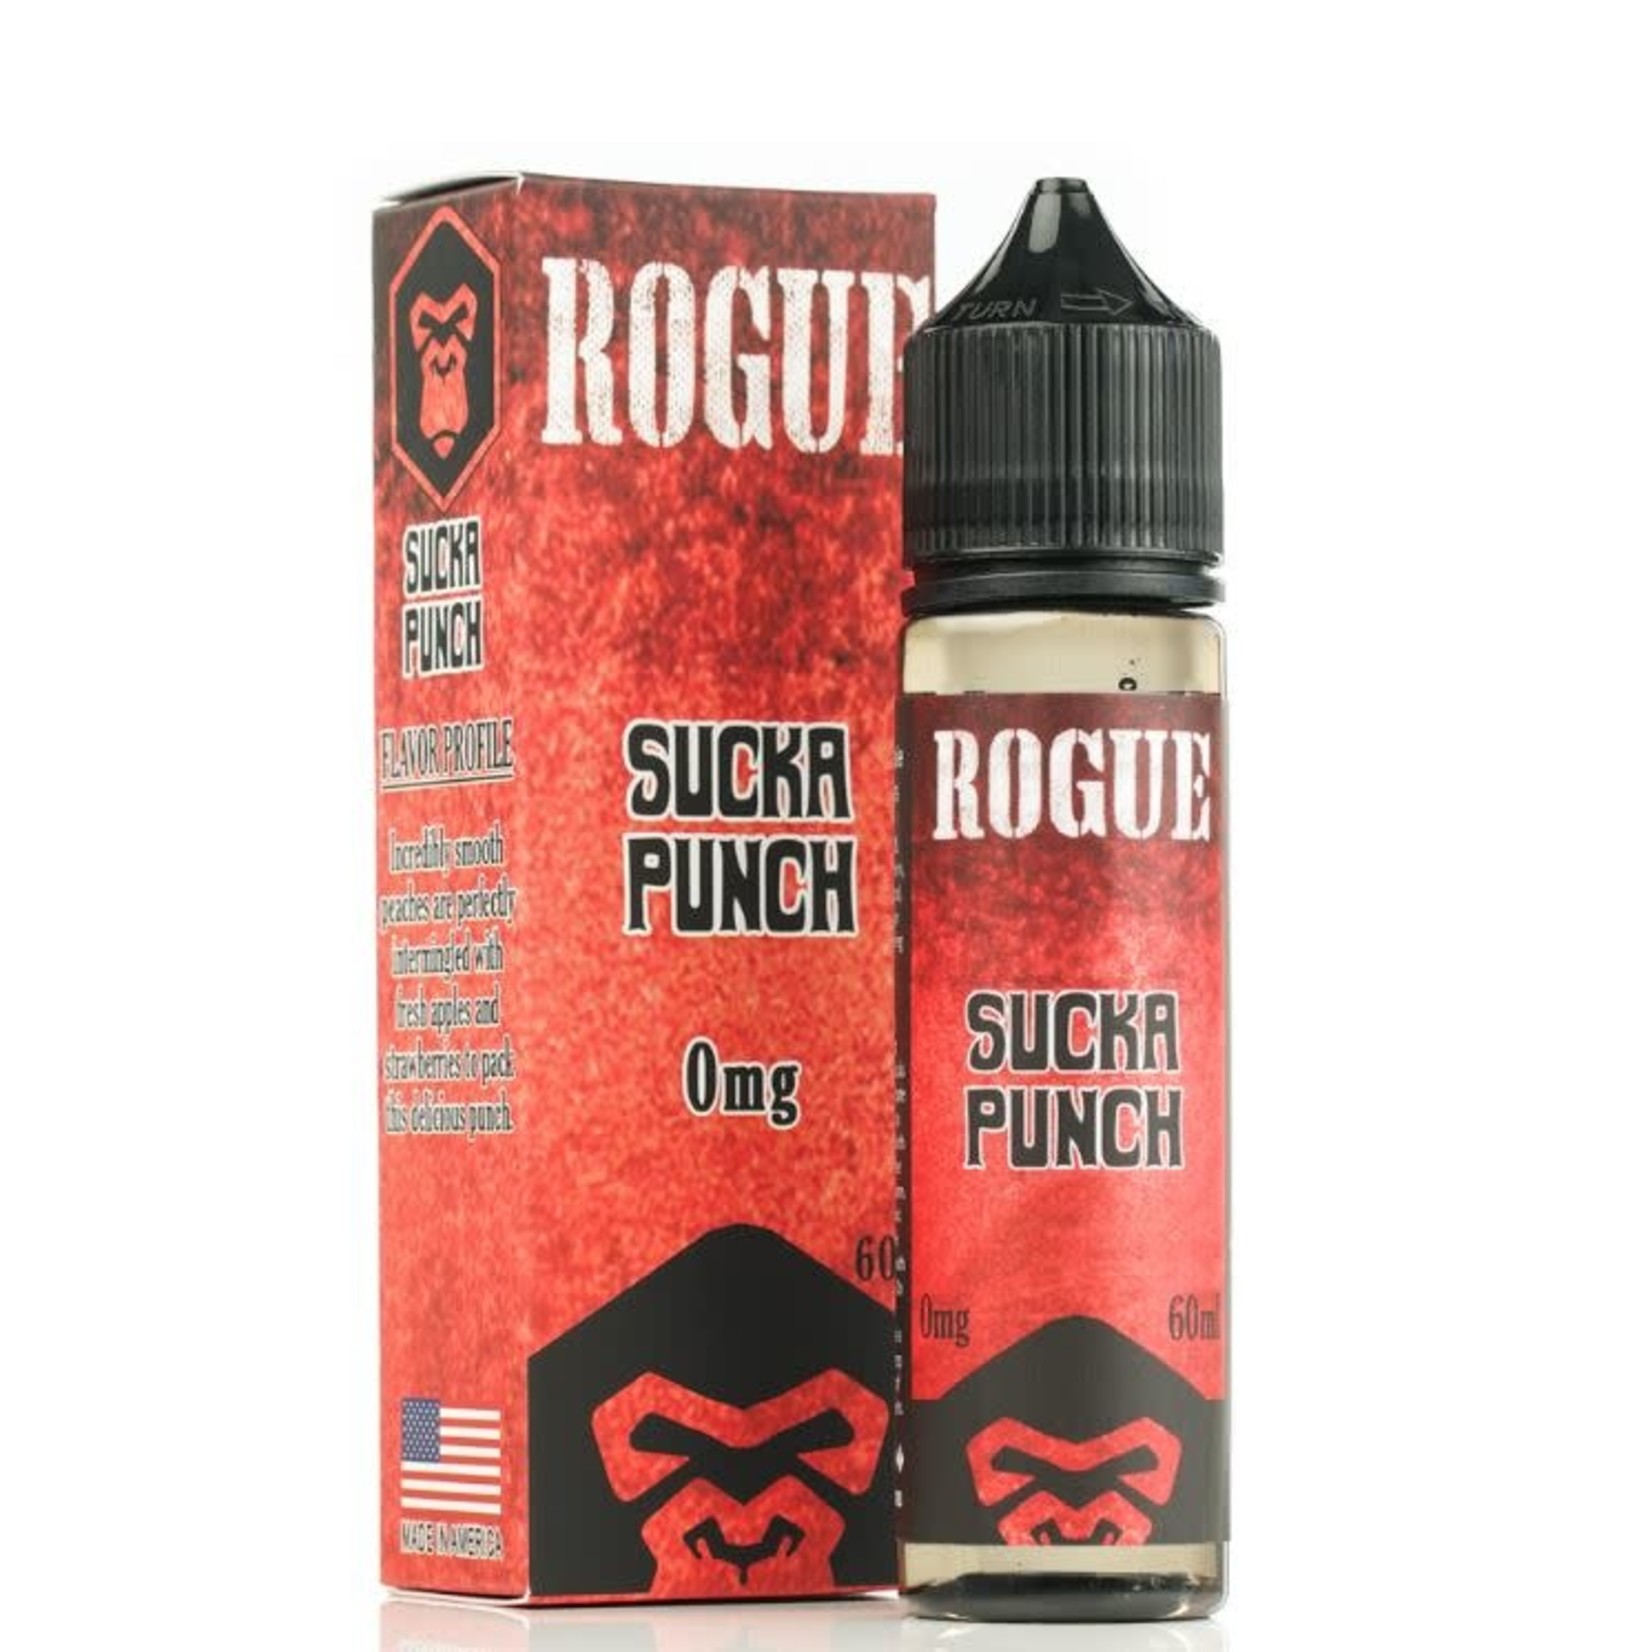 Rogue Sucka Punch 60ml